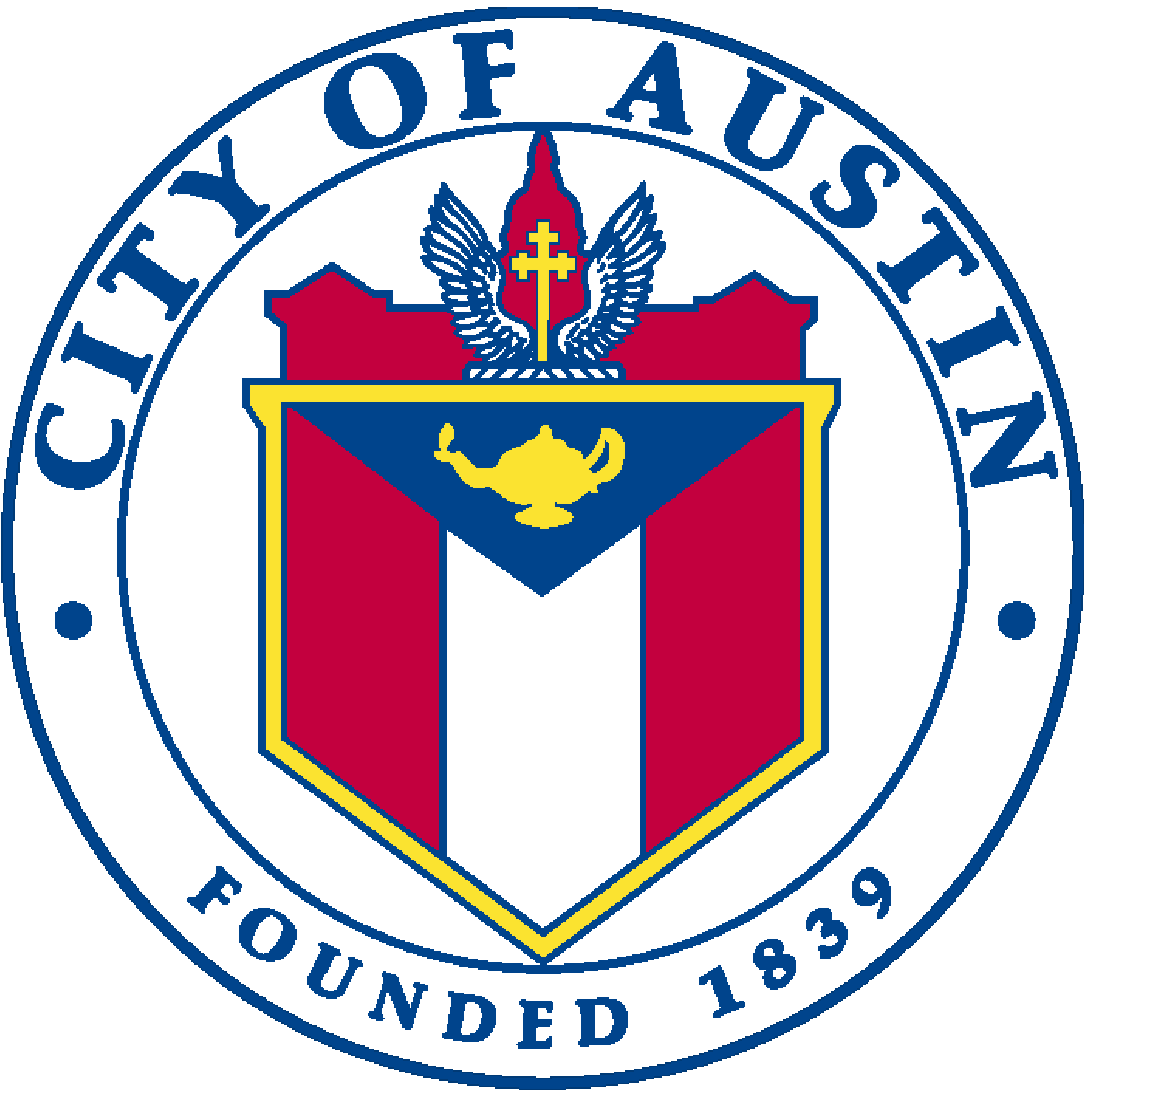 We are seeking to hire a Temporary Urban Resilience Coordinator.

Apply Now: austincityjobs.org/postings/109495

#KeepAustinHired #AustinJobs #NowHiring #ResilienceCoordinatorJobs